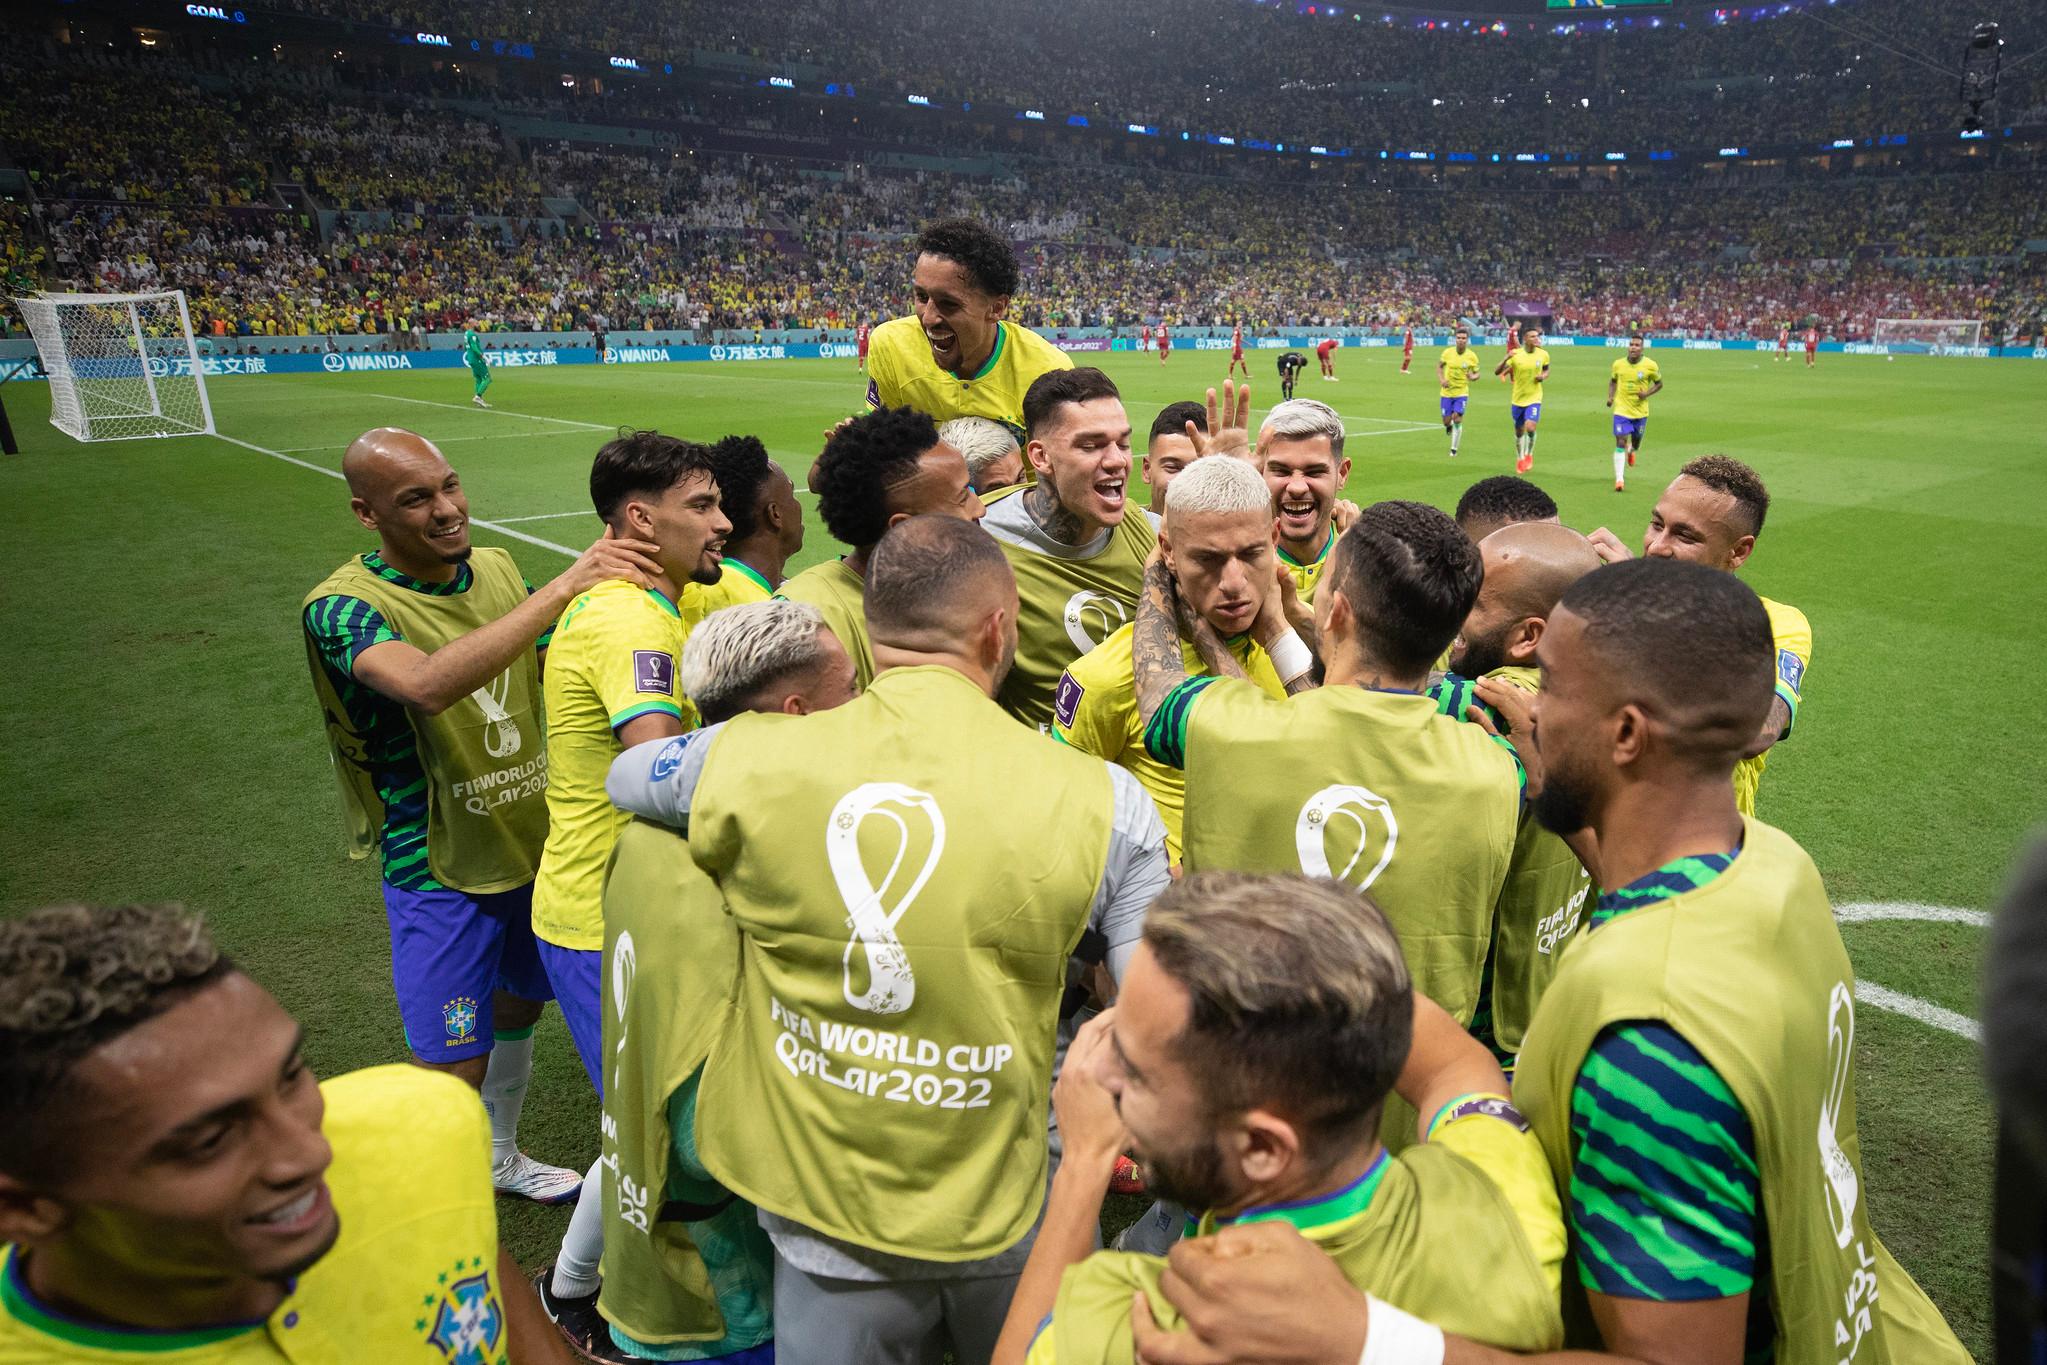 Brasil x Sérvia na Copa do Mundo: rivais no jogo fazem confronto  equilibrado na economia - Bora Investir